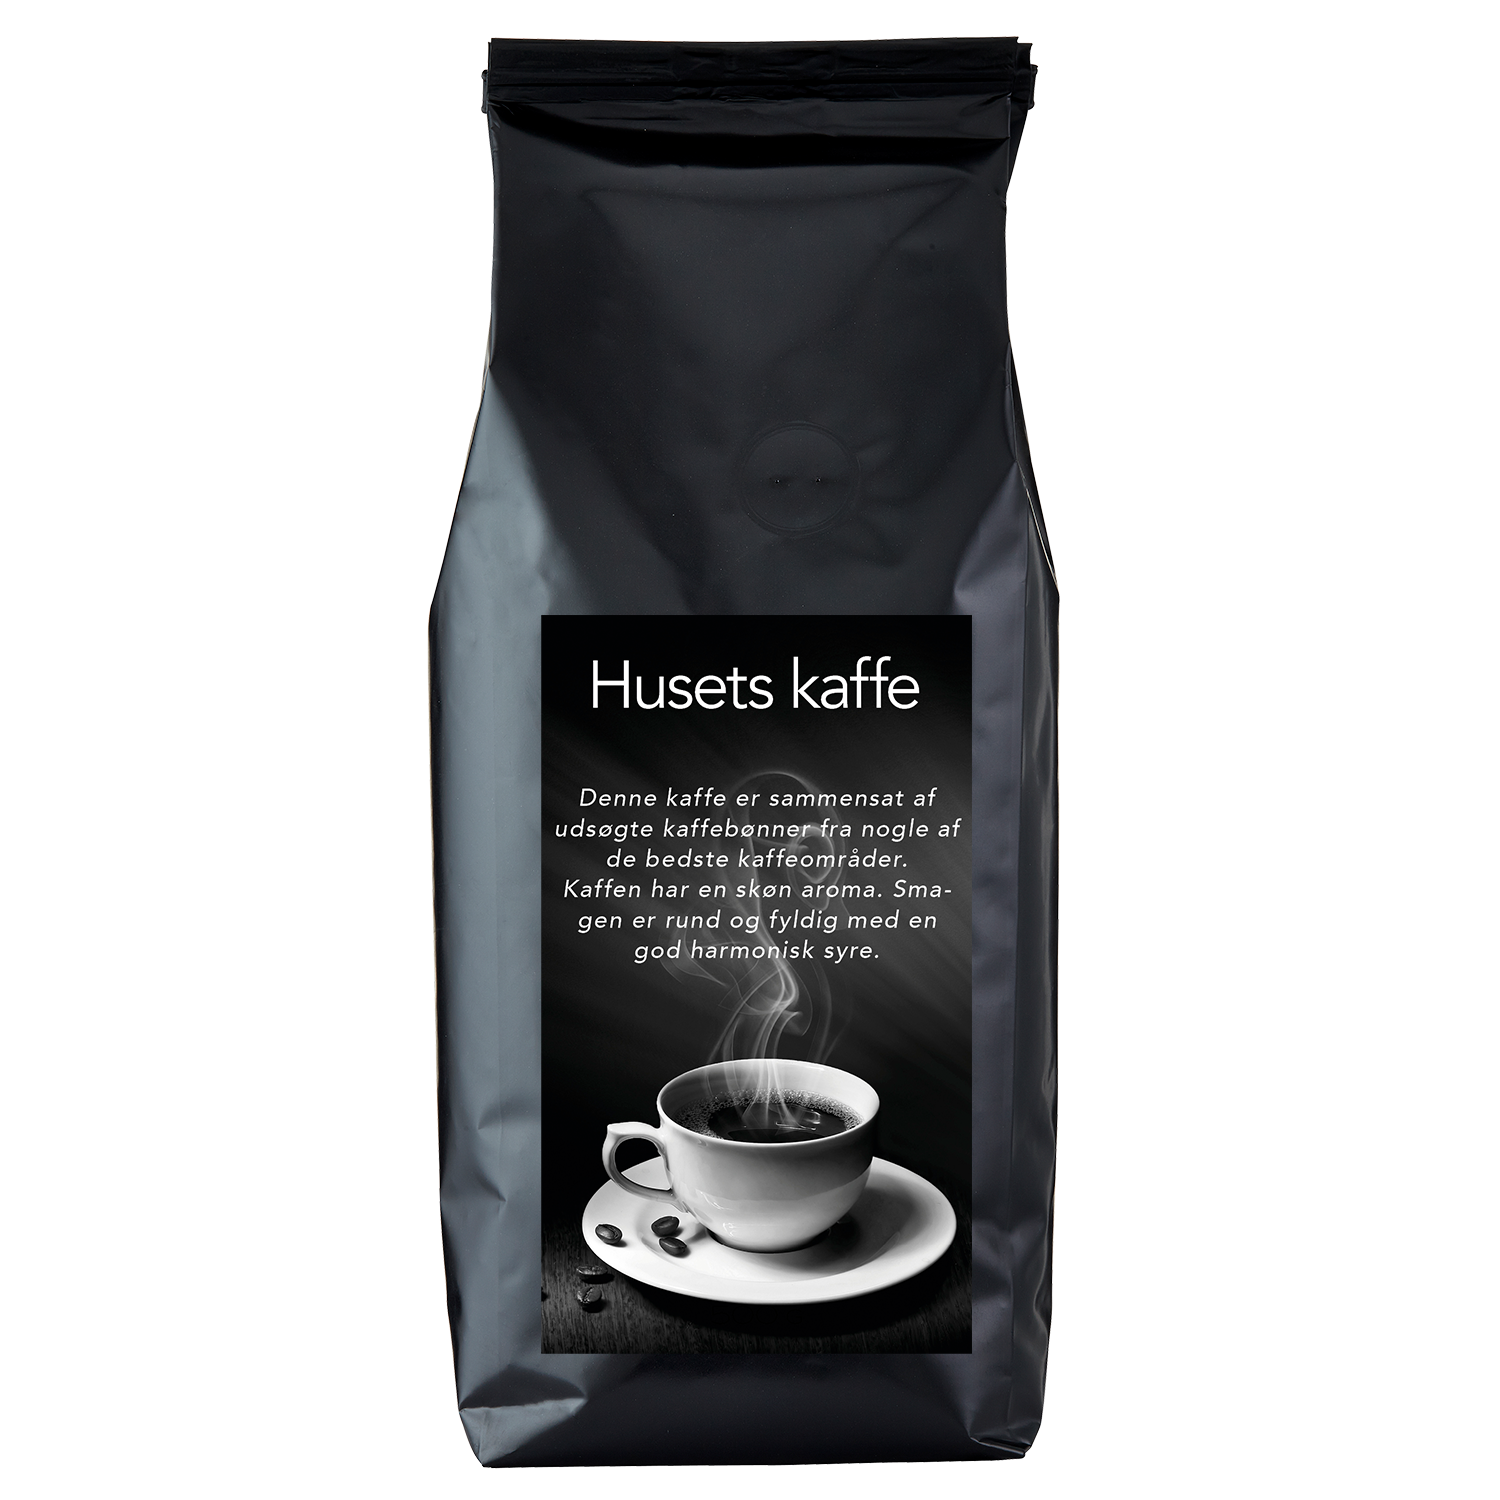 Huset's kaffe HB NR3, 500 g